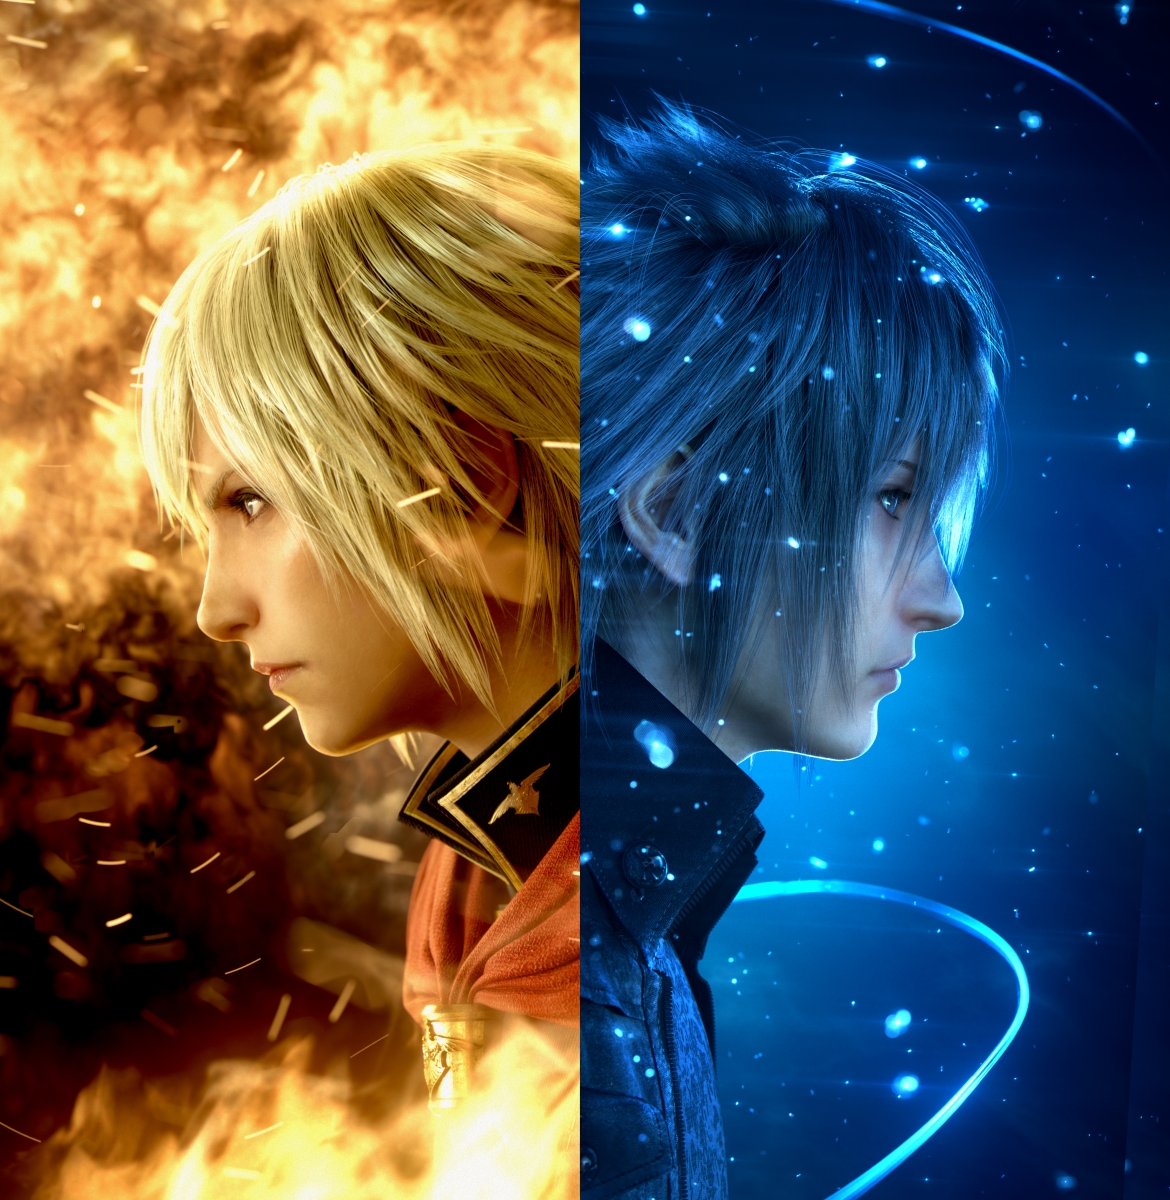 Square confirma: demo de Final Fantasy XV chega com Type-0